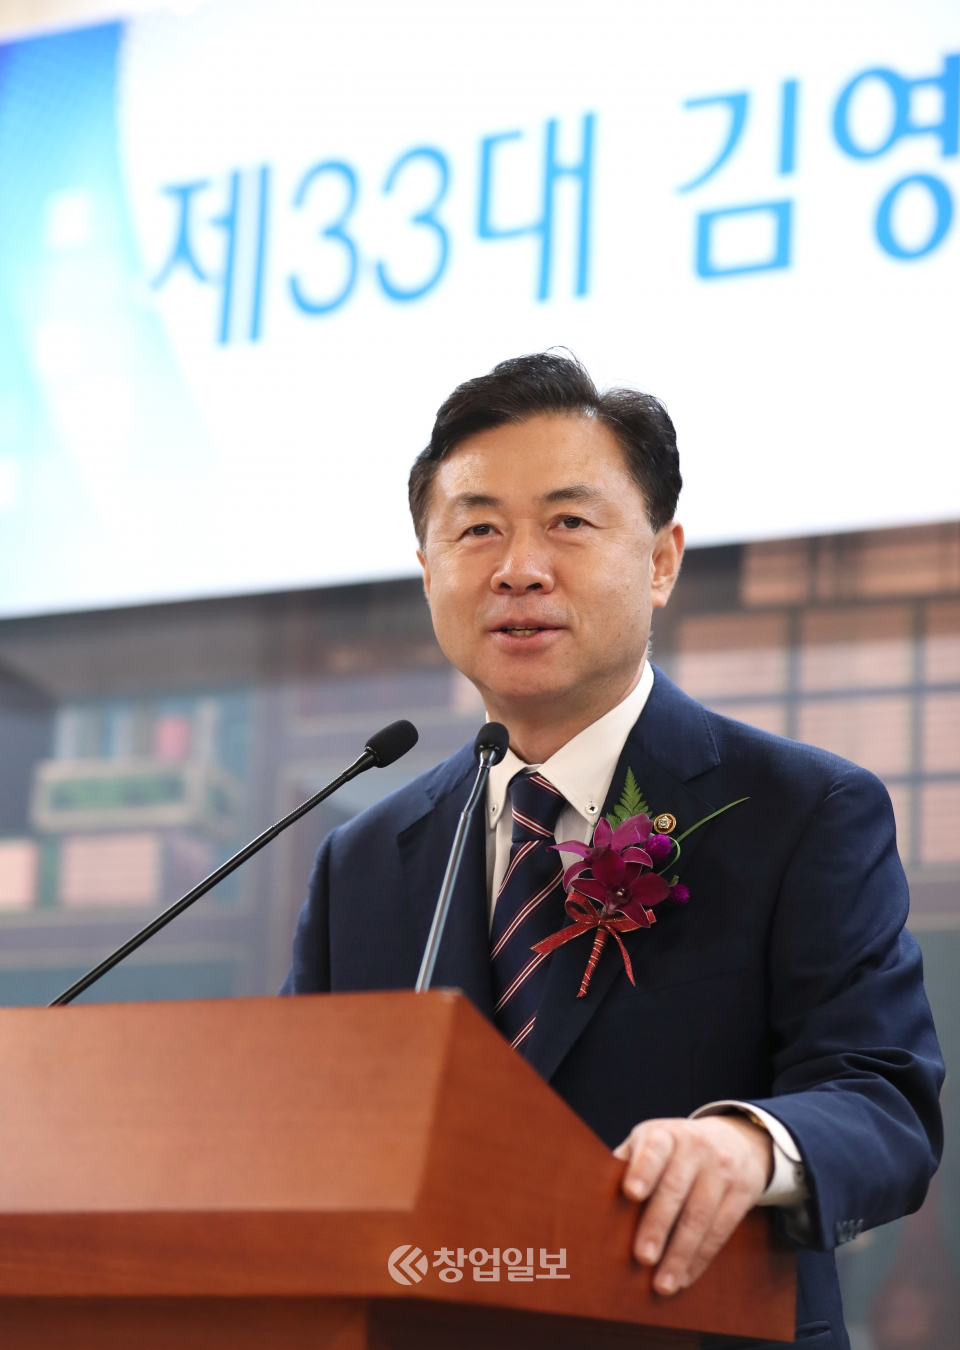 김영춘 국회사무총장이 사상 처음으로 온라인 취임식을 가졌다.